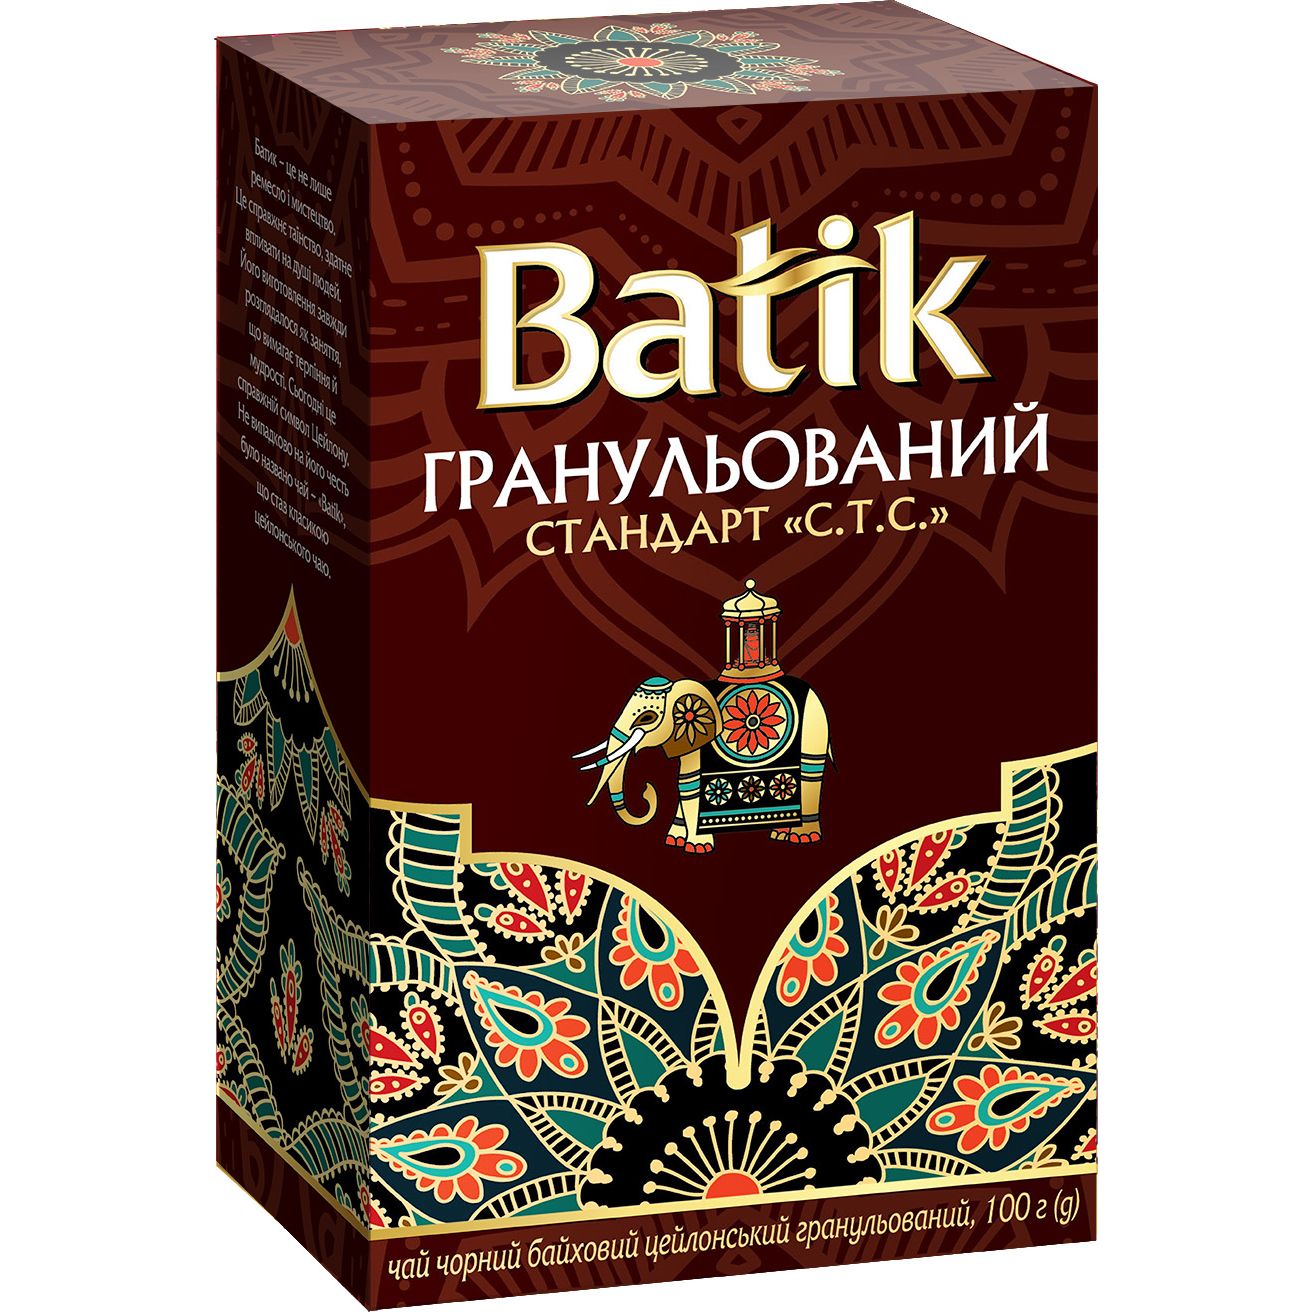 Чай чорний Batik Стандарт CTC гранульований, байховий, цейлонський, 100 г - фото 1